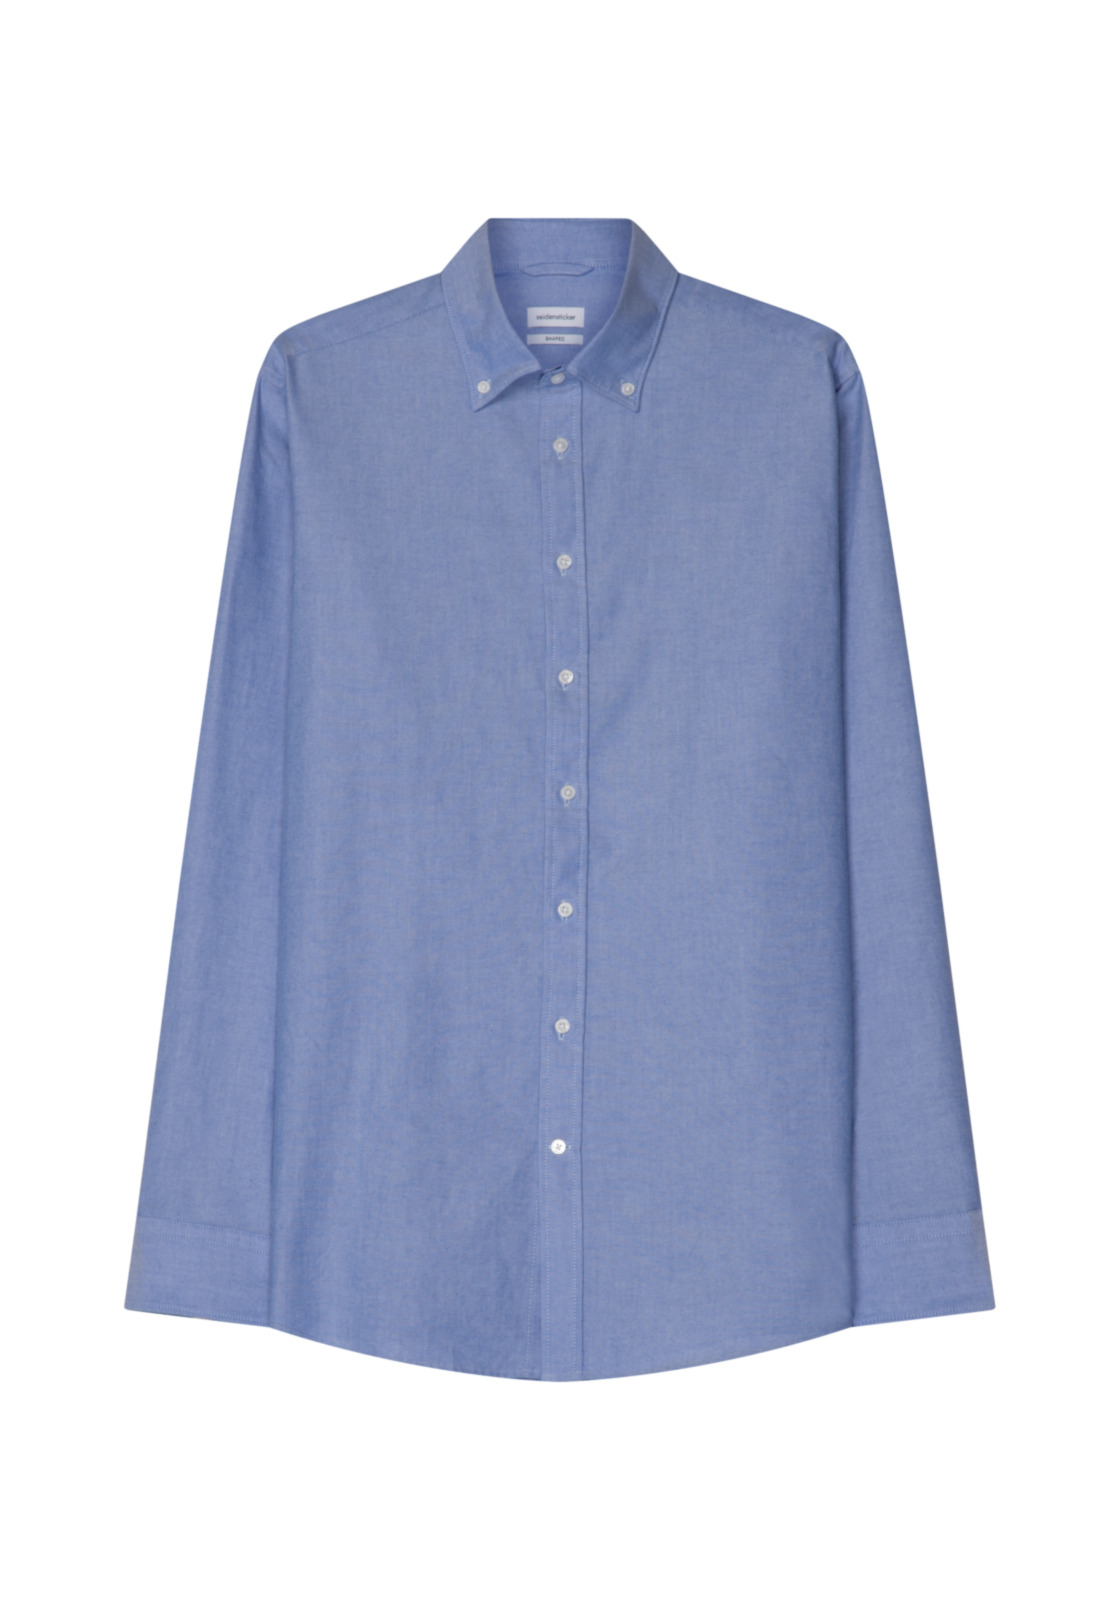 Seidensticker shaped fit overhemd, Oxford, blauw